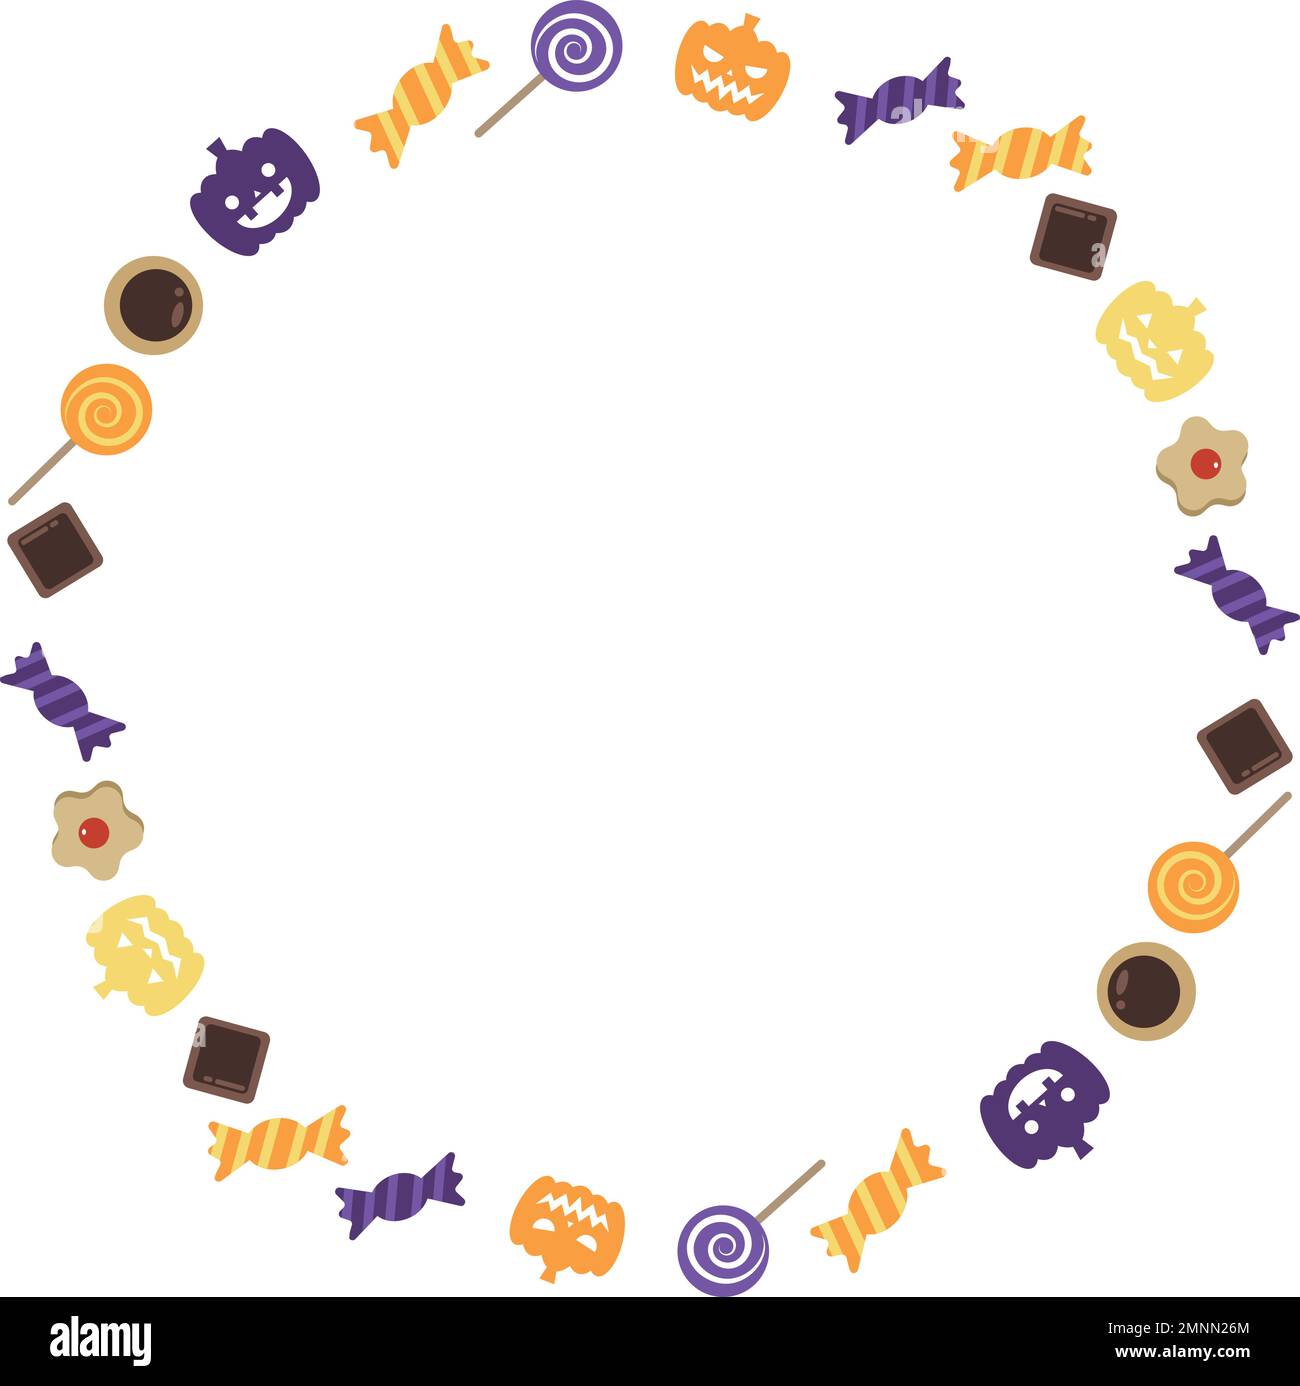 Cadre circulaire orné de bonbons pour Halloween. Conception simple à base d'orange et de violet. Illustration de Vecteur